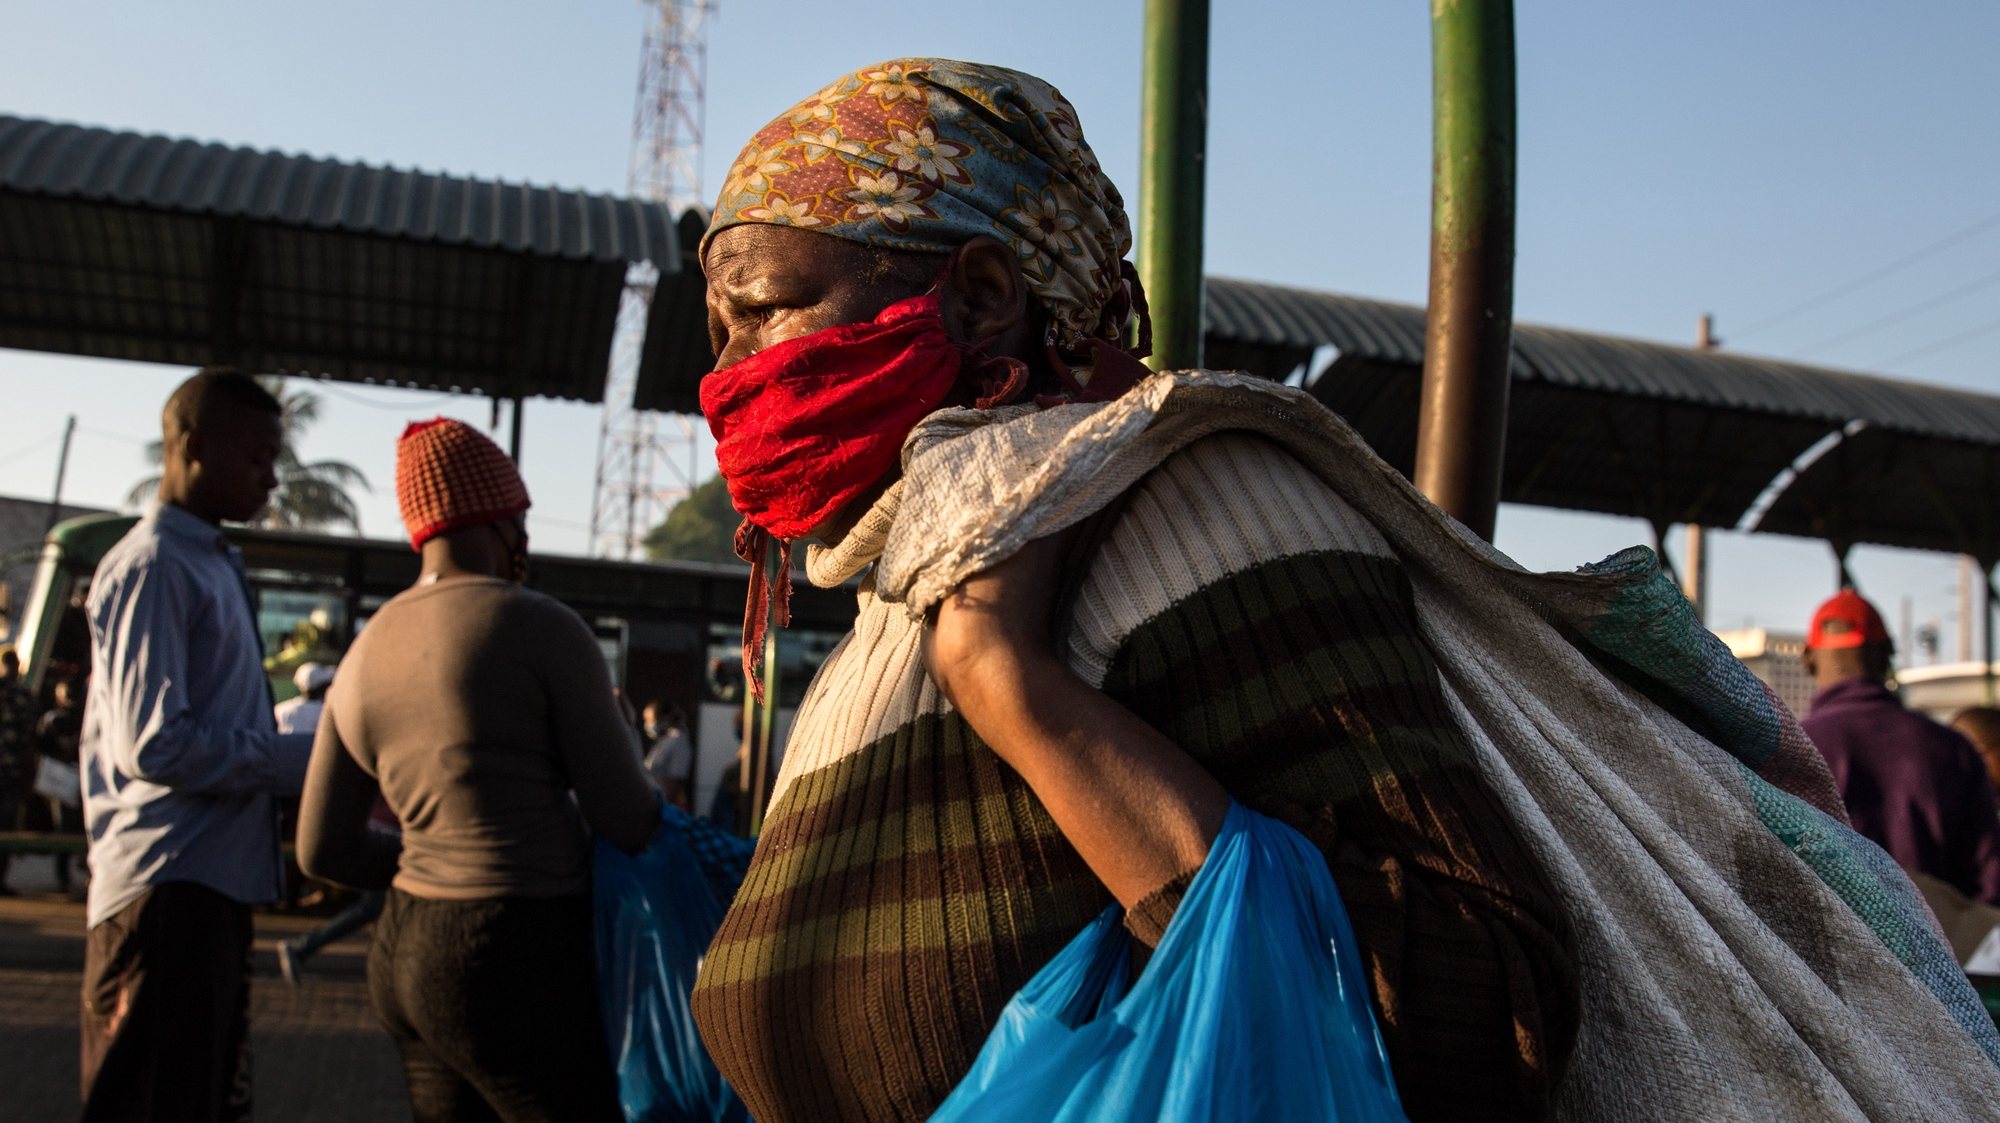 Uma passageira usa uma máscaras de proteção contra a covid-19 enquanto aguarda por um autocarro no terminal Rodoviário de Xiquelene, em Maputo, Moçambique, 01 junho 2020. Primeiro dia da segunda prorrogação do estado de emergência em Moçambique que teve inicio às zero horas do dia 31 de maio, devido a pandemia de Covid19. (ACOMPANHA TEXTO). RICARDO FRANCO/LUSA